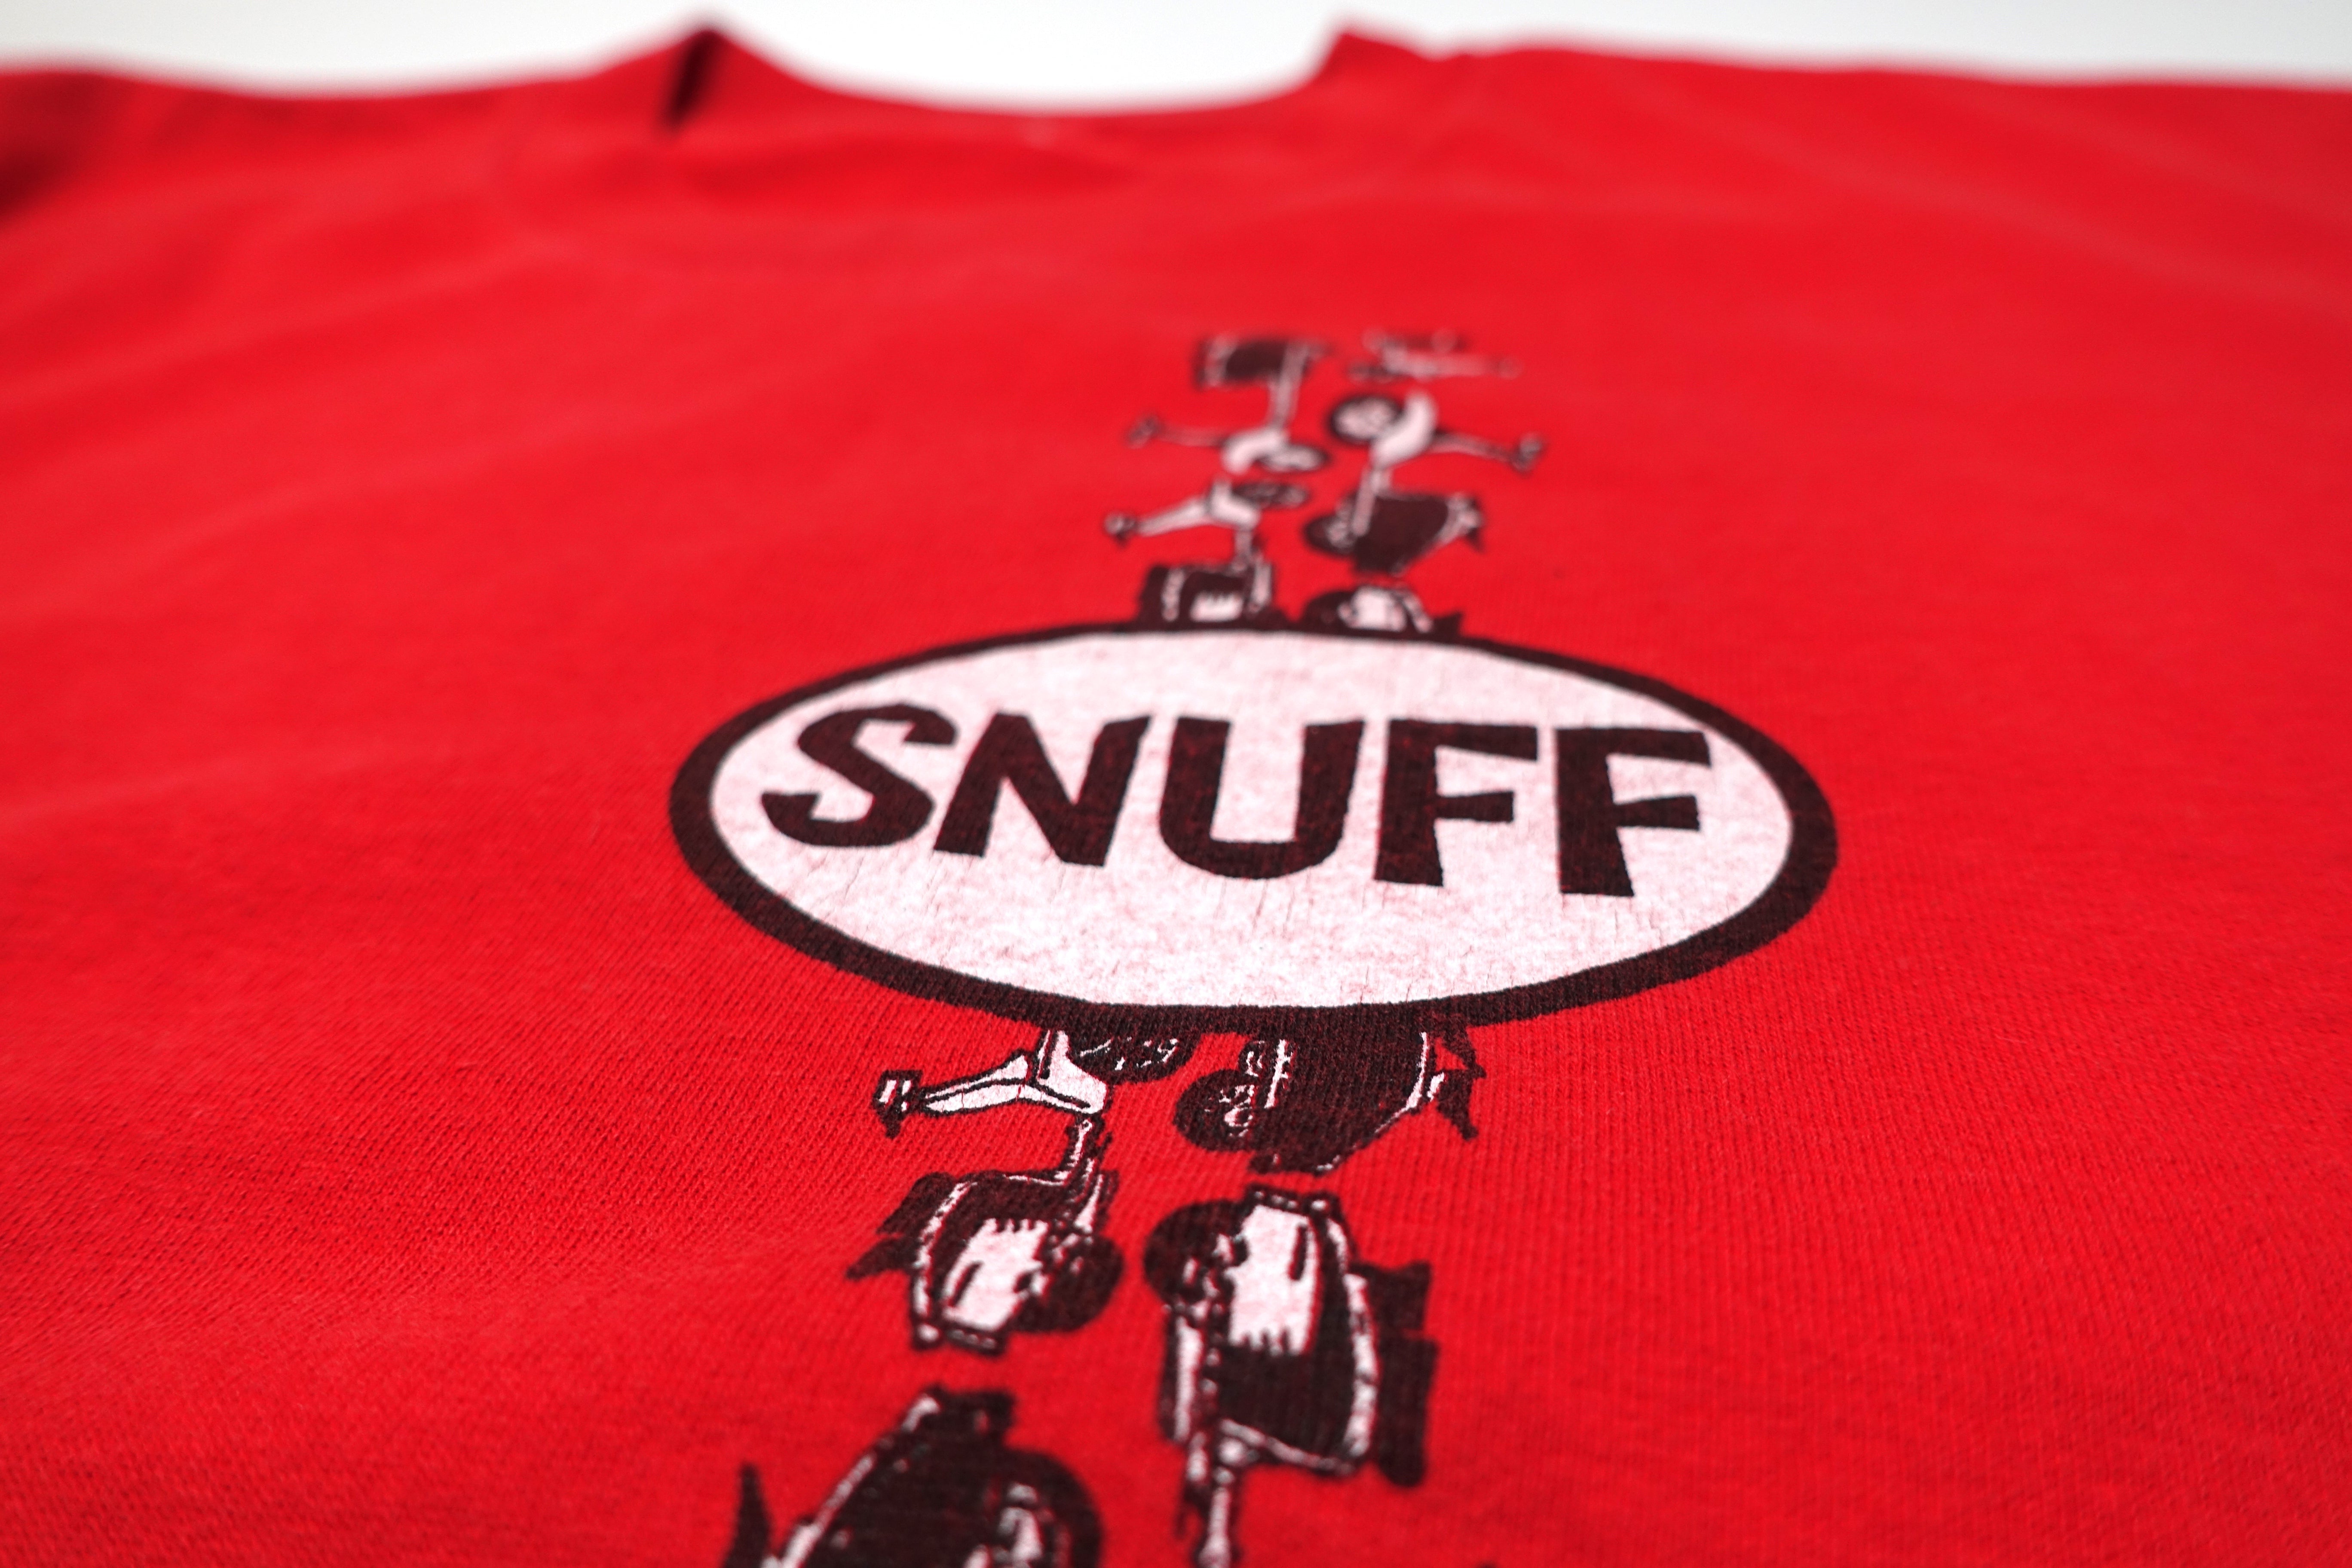 Snuff - "Futtin Marvelousk" / Do Do Do 1996 Tour Shirt Size XL